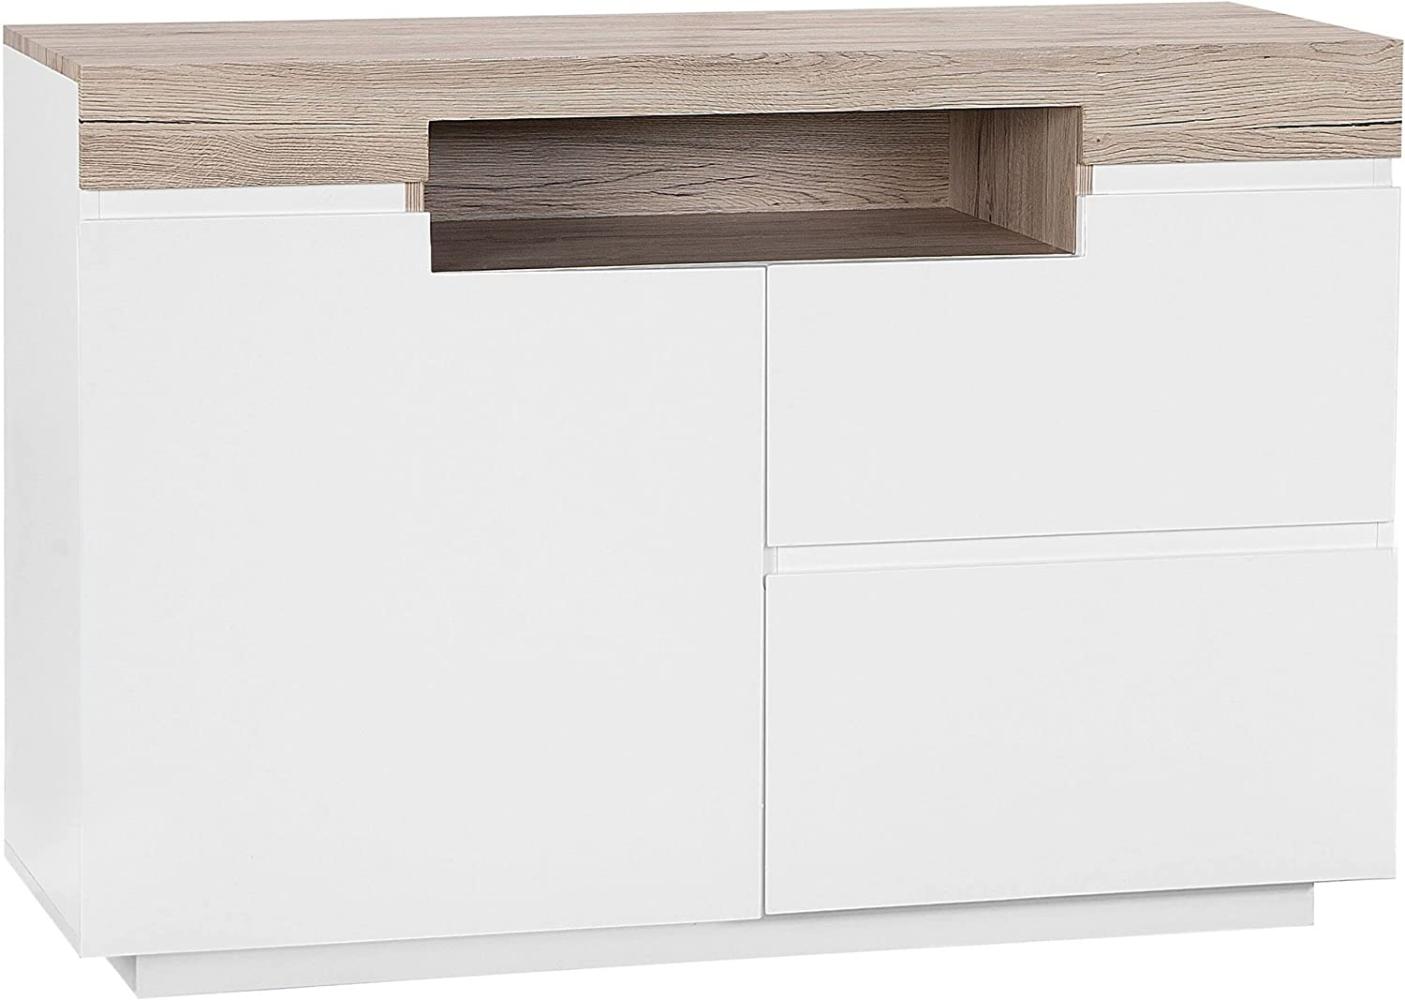 Sideboard weiß / heller Holzfarbton 2 Schubladen Schrank MARLIN Bild 1